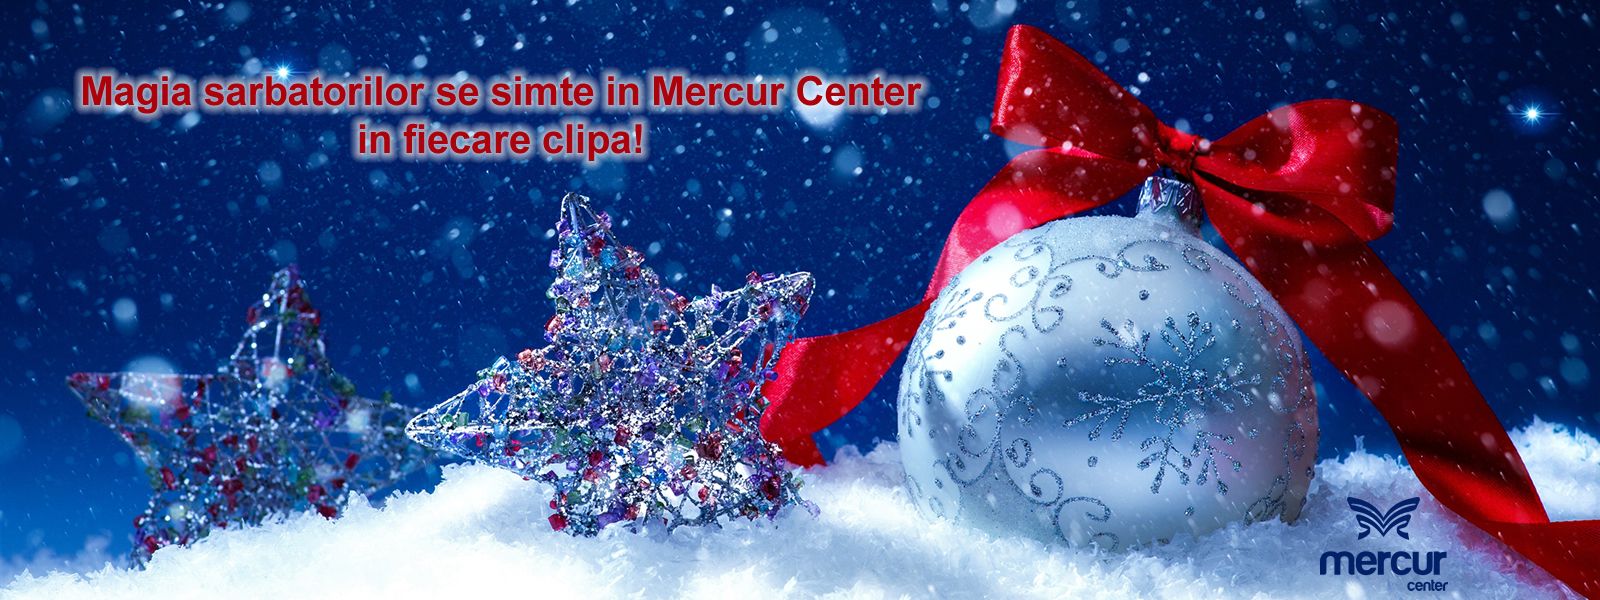 Magia sărbătorilor se simte în Mercur Center în fiecare clipă!